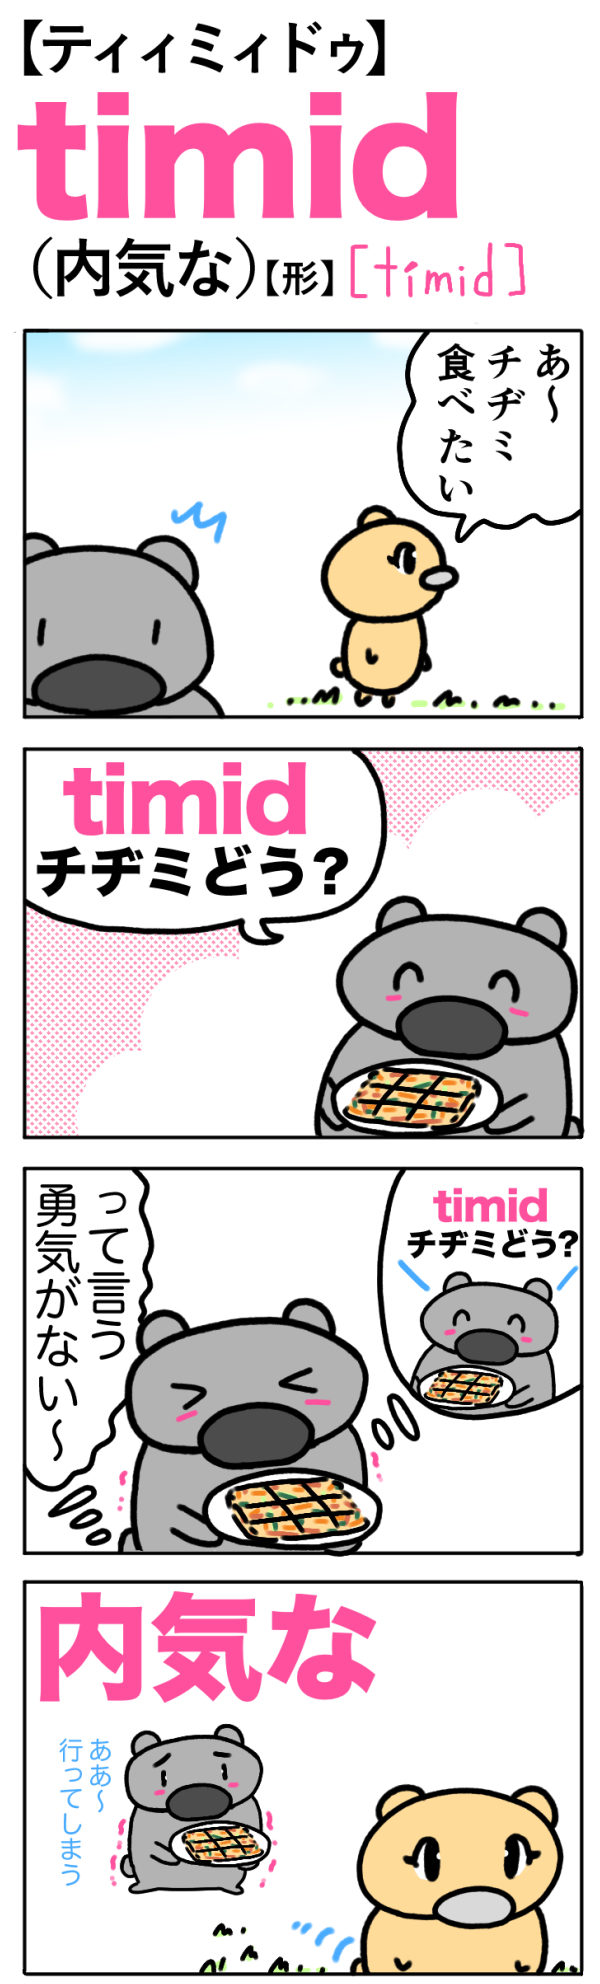 timid（内気な）の語呂合わせ英単語